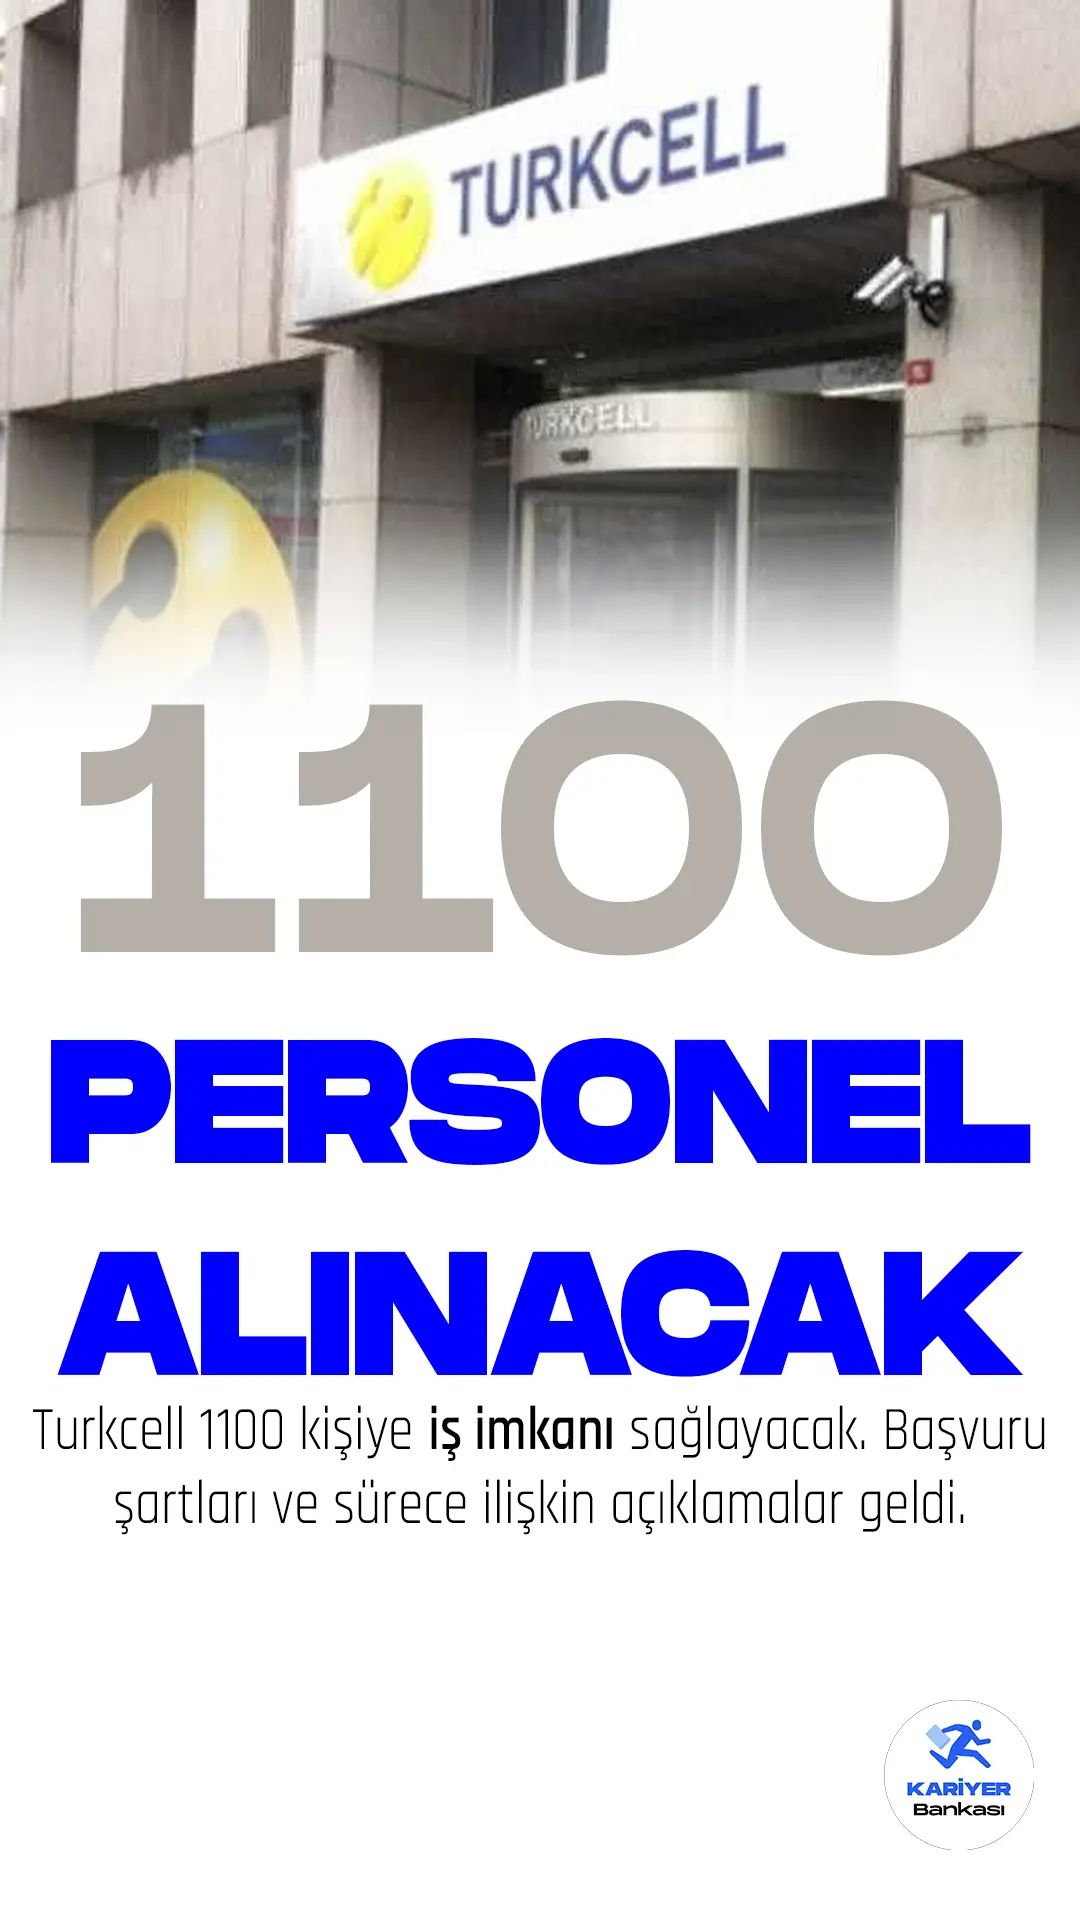 Turkcell, 11 ilde 1100 personel alımı gerçekleştirecek. Deprem bölgesindeki vatandaşlar için yeni iş imkanı sağlanacağına yönelik açıklamalar geldi.